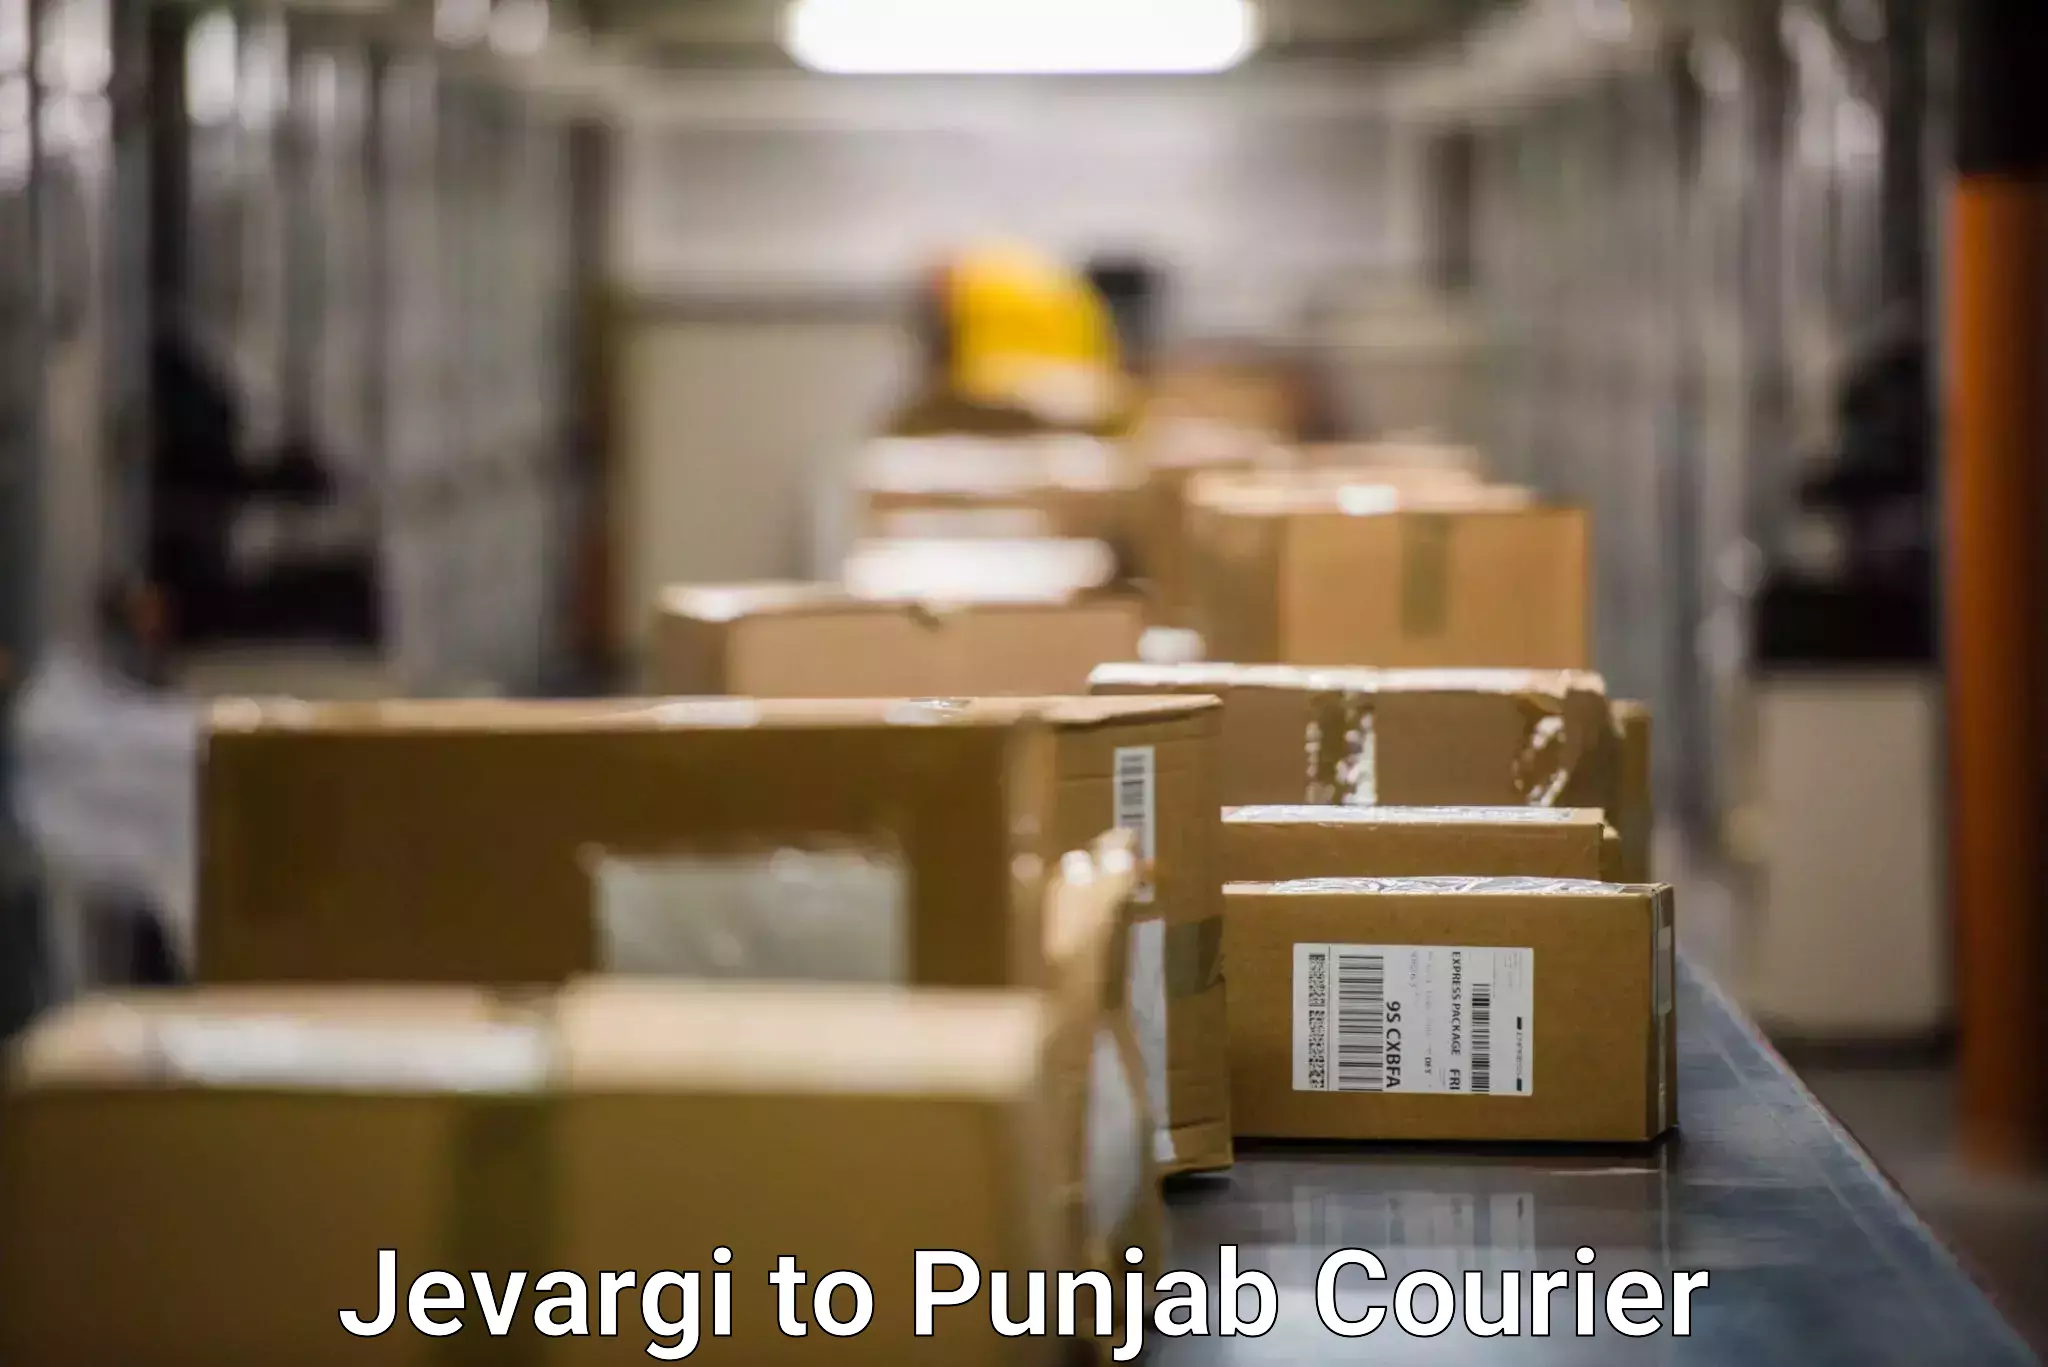 Courier insurance Jevargi to Central University of Punjab Bathinda